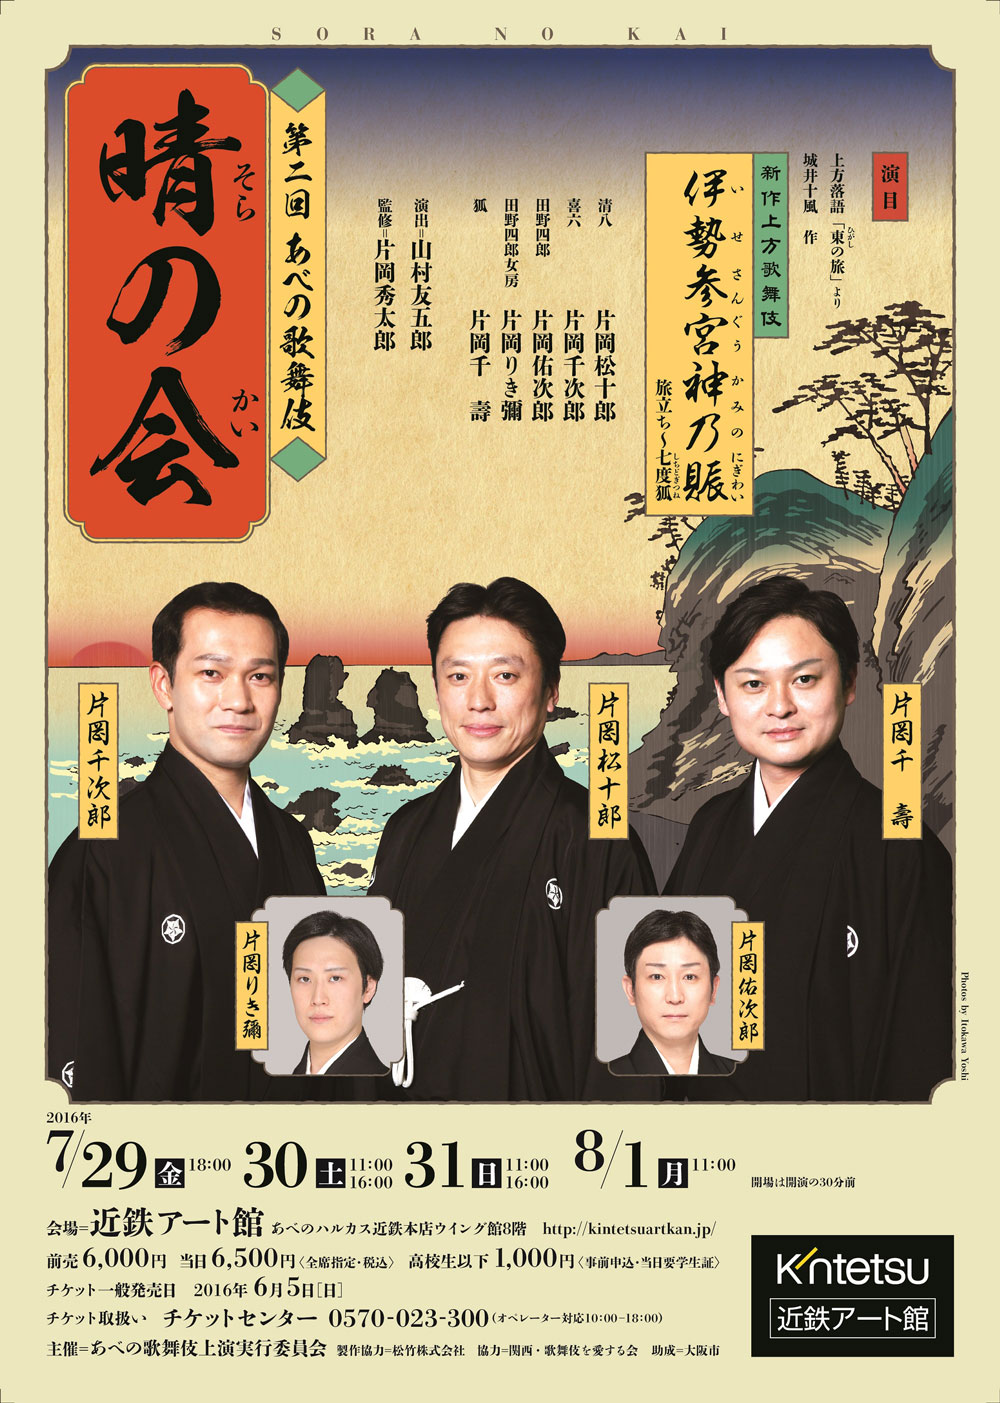 松十郎、千壽、千次郎、佑次郎、りき彌「第二回あべの歌舞伎 晴の会」のお知らせ